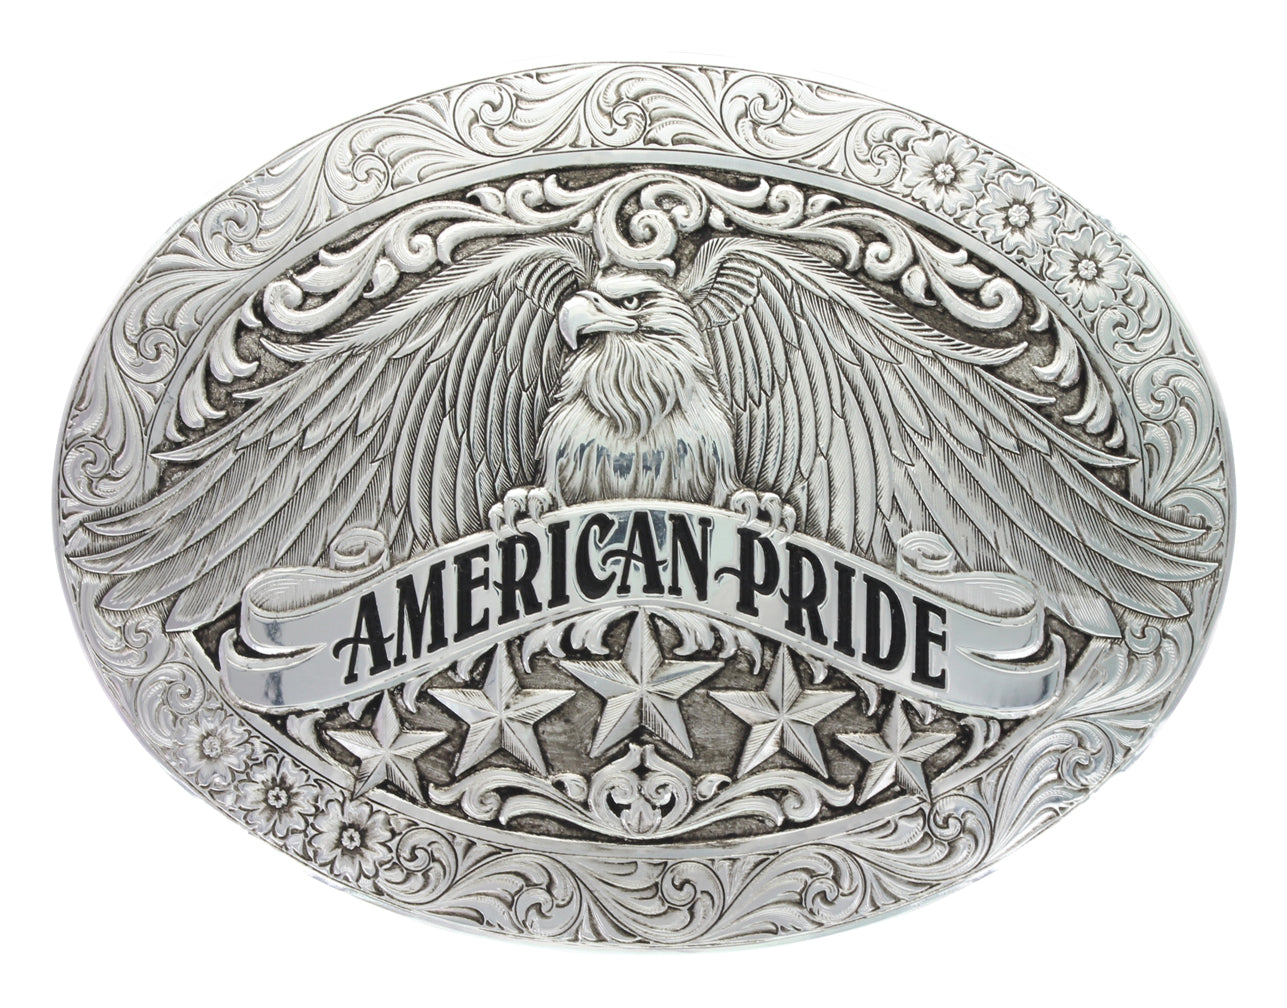 Antiqued American Pride Buckle